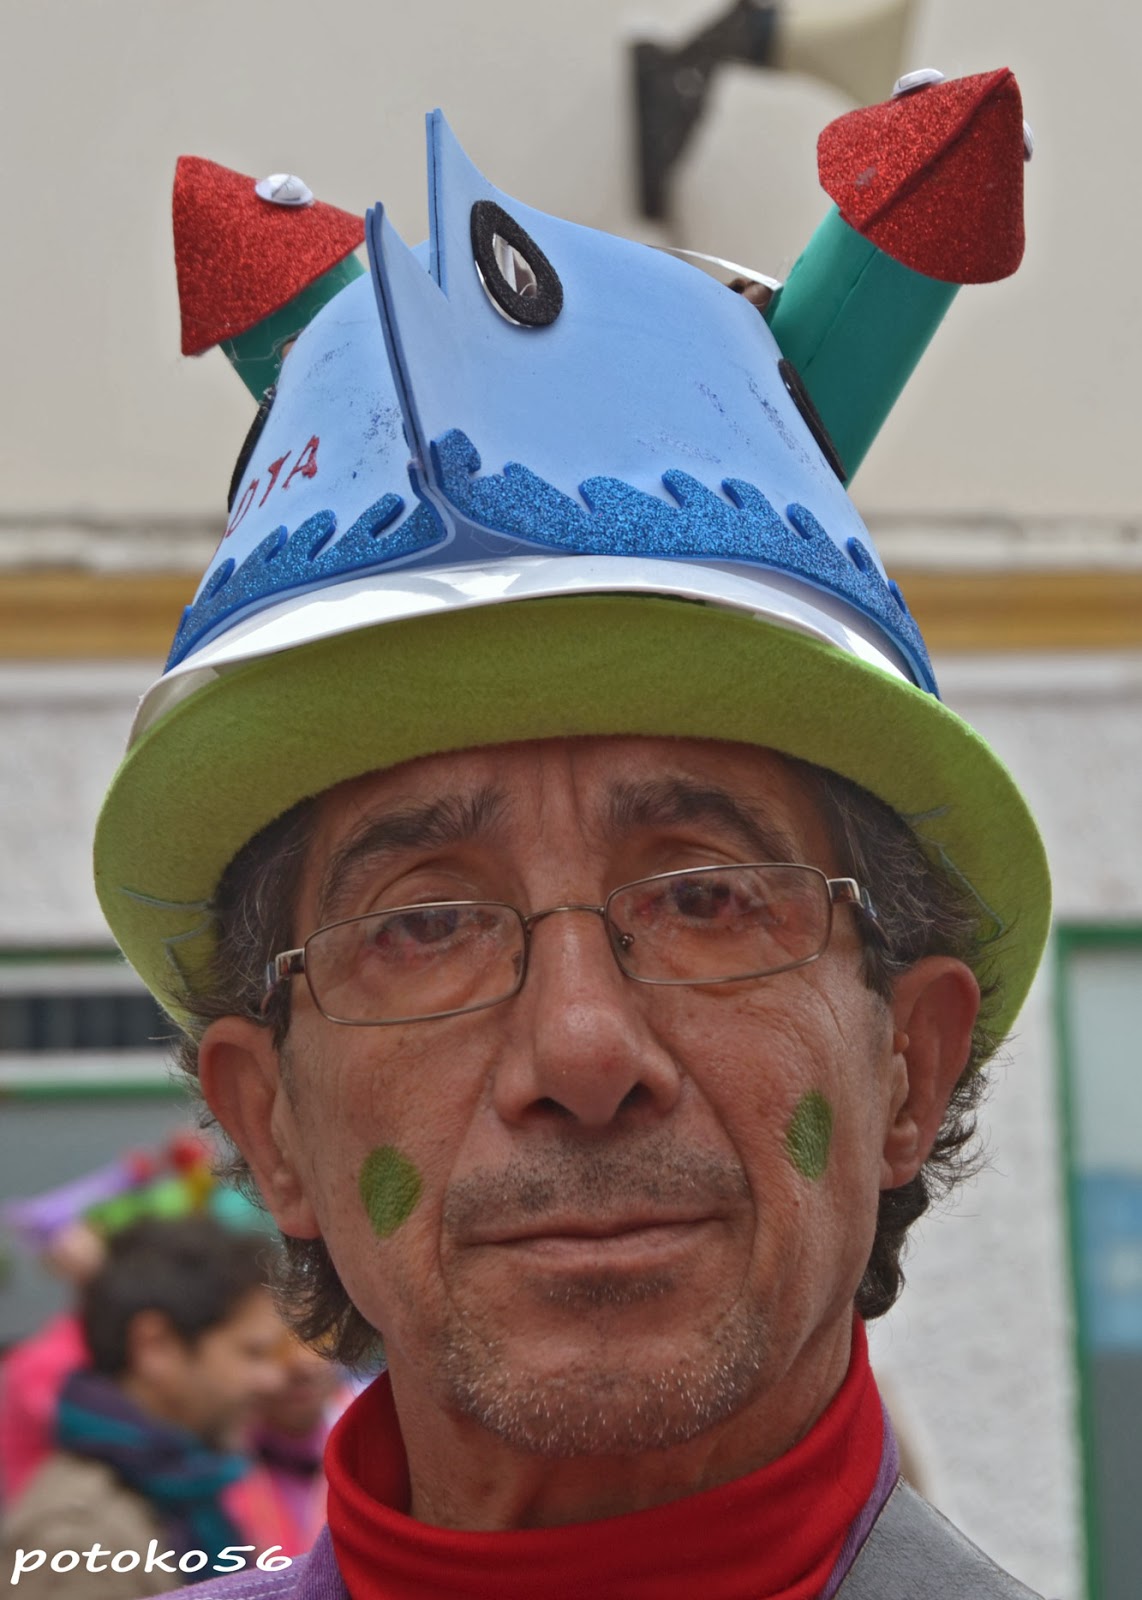 José Sánchez Gutiérrez (potoko56) 